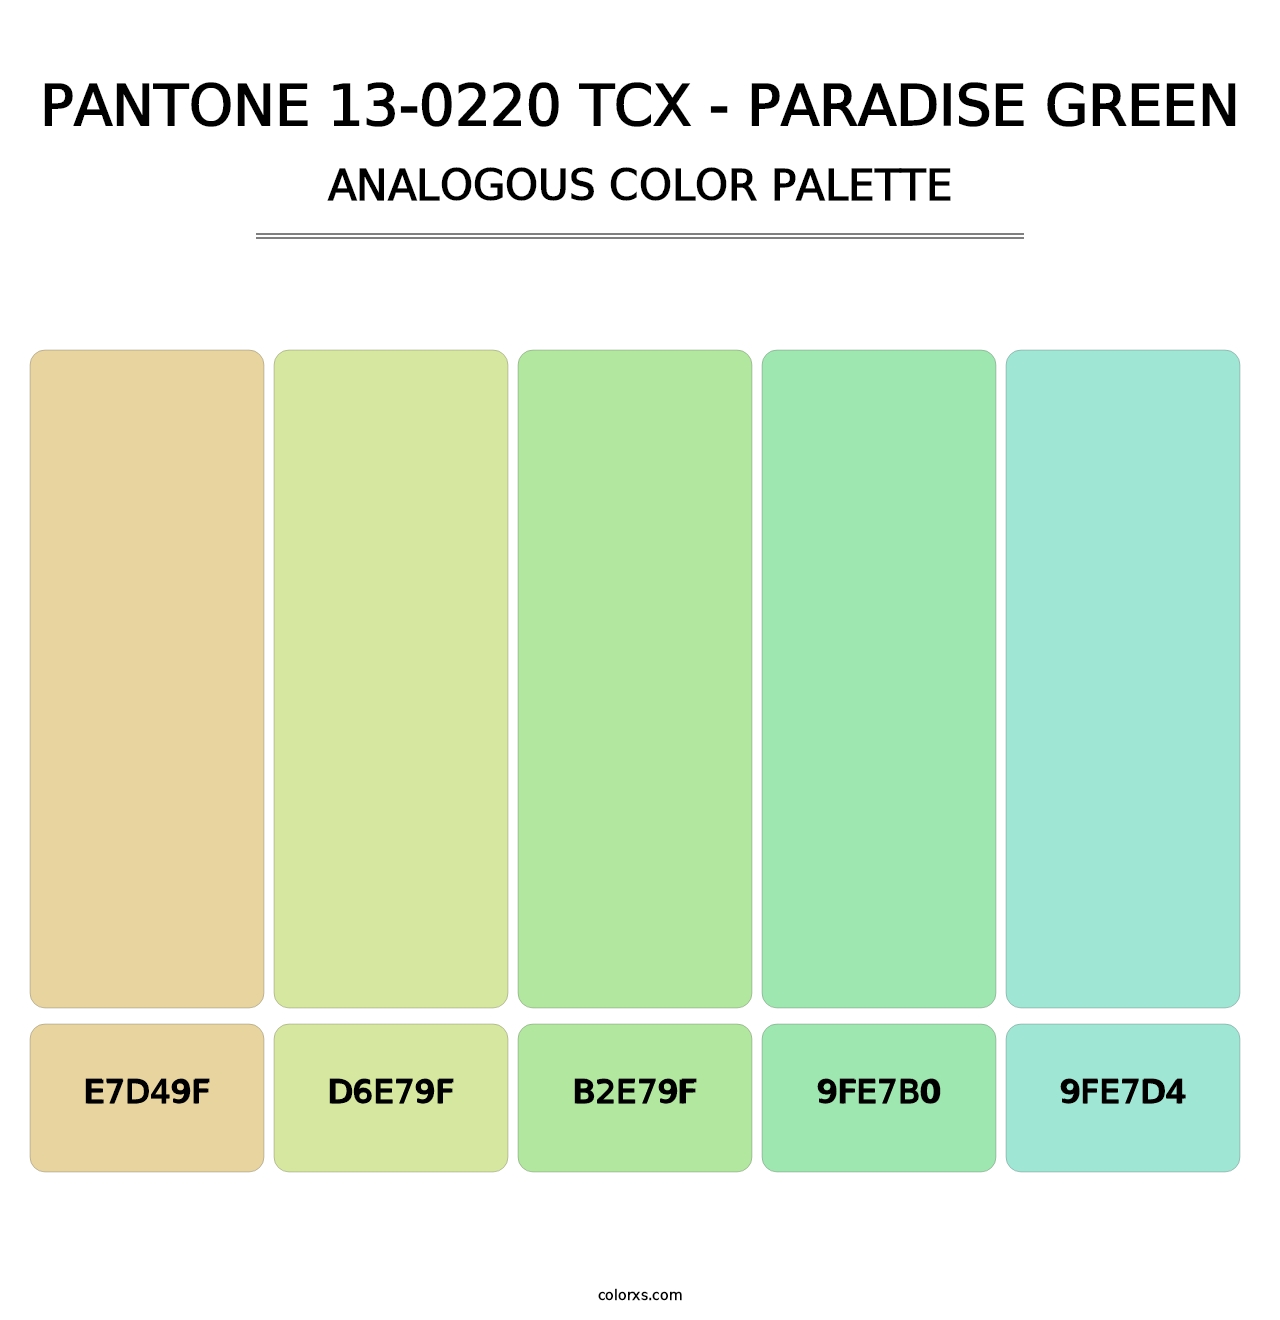 PANTONE 13-0220 TCX - Paradise Green - Analogous Color Palette